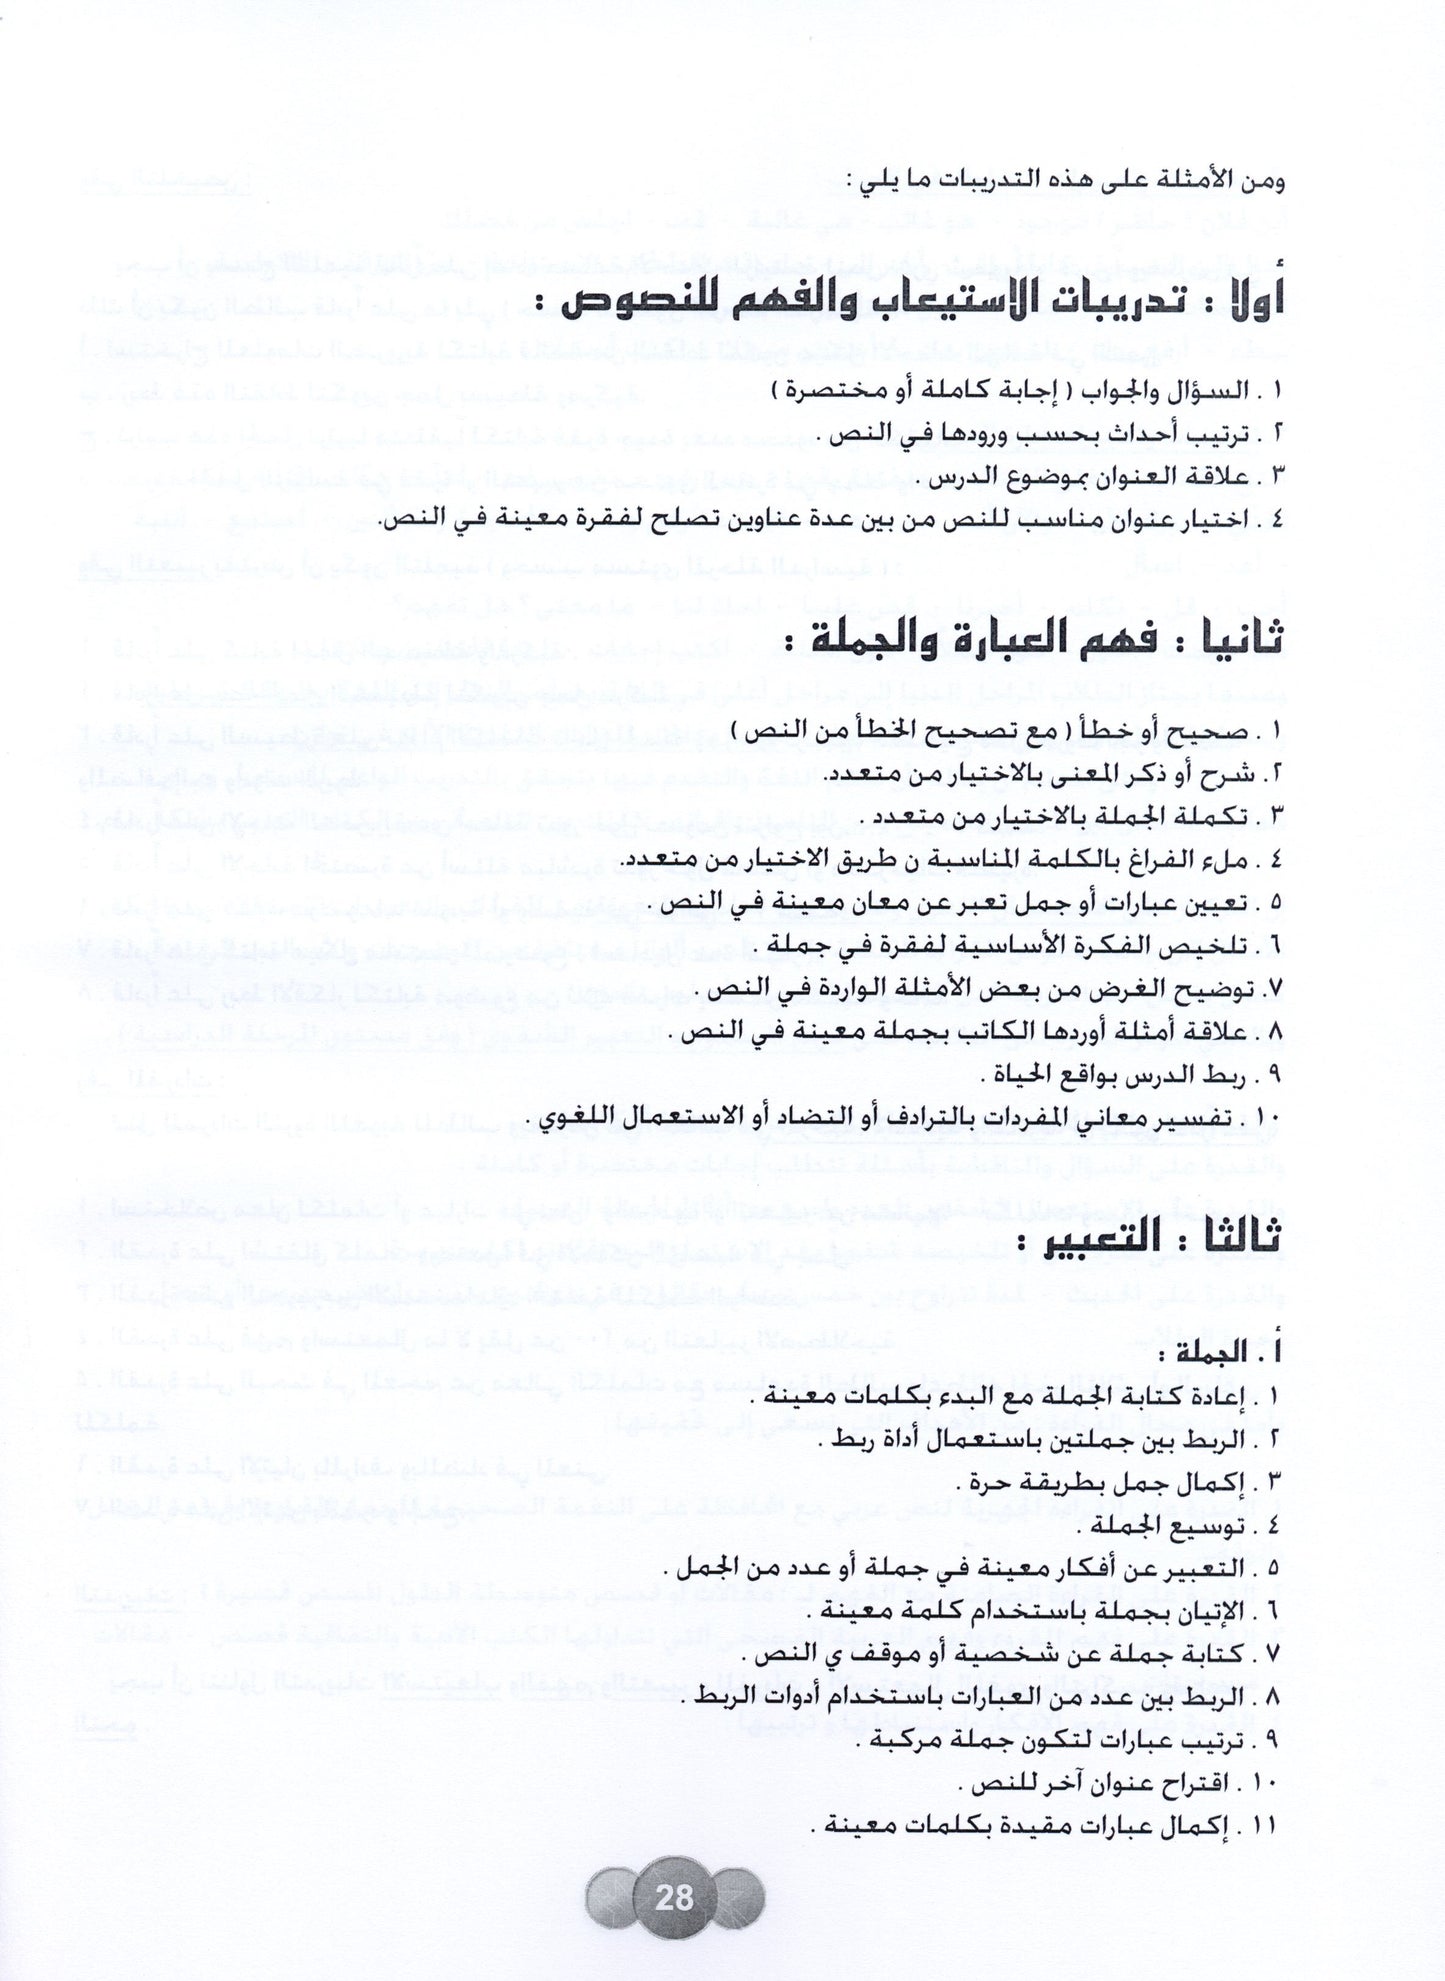 Al Aafaq Parent/Teacher Guide - Grade/Level 5